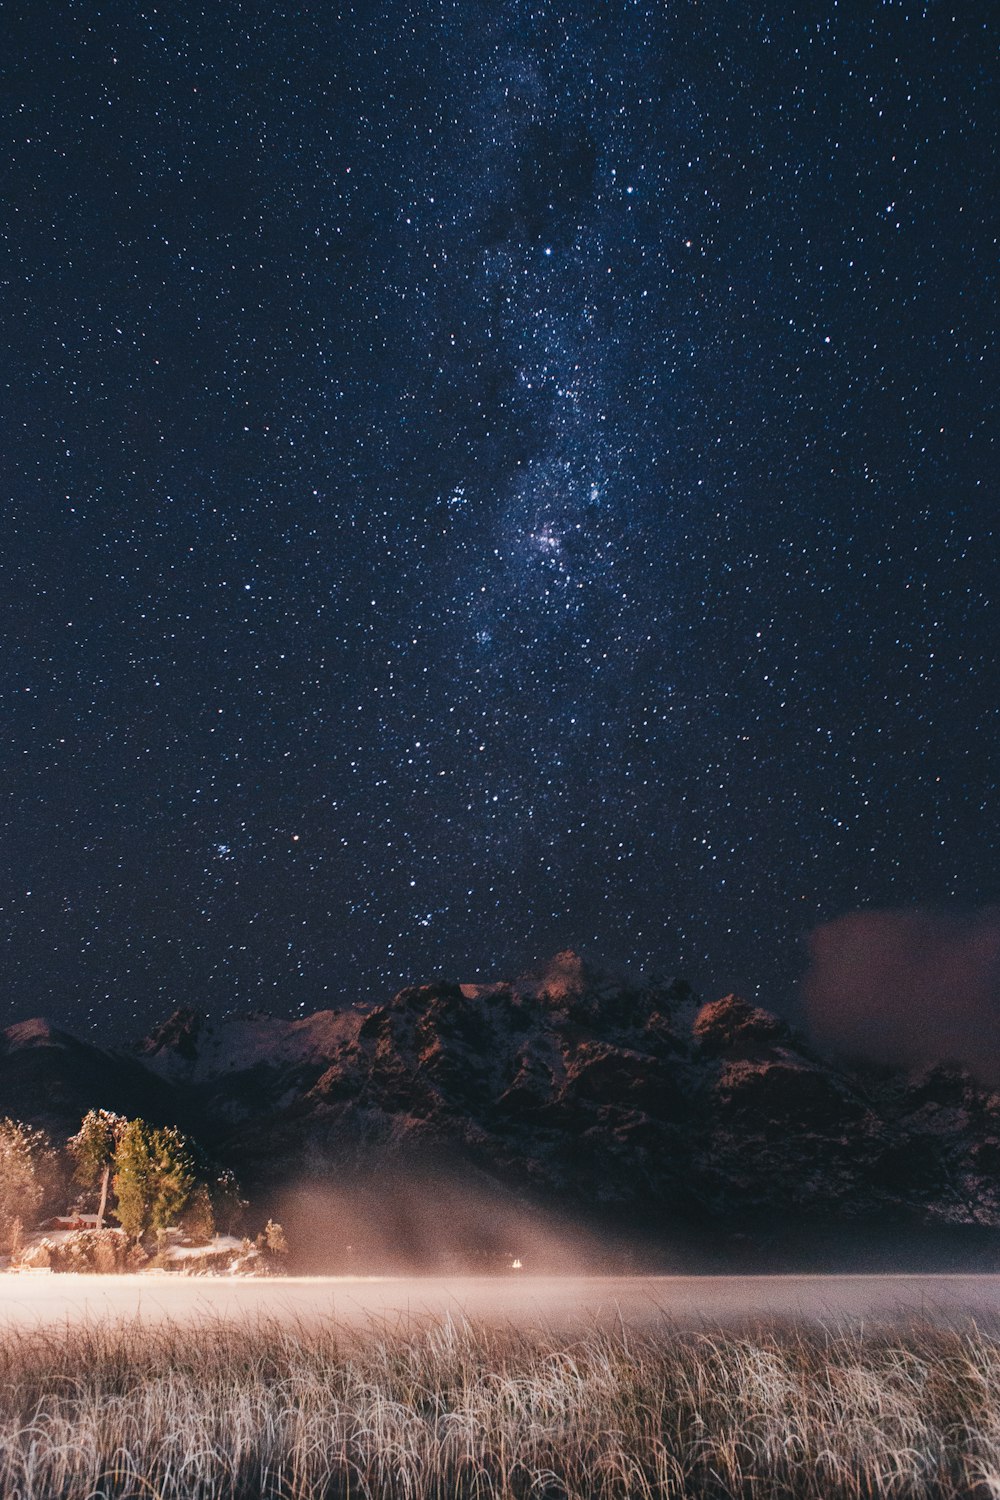 Landschaftsfoto von Bergen unter dem Sternenhimmel bei Nacht